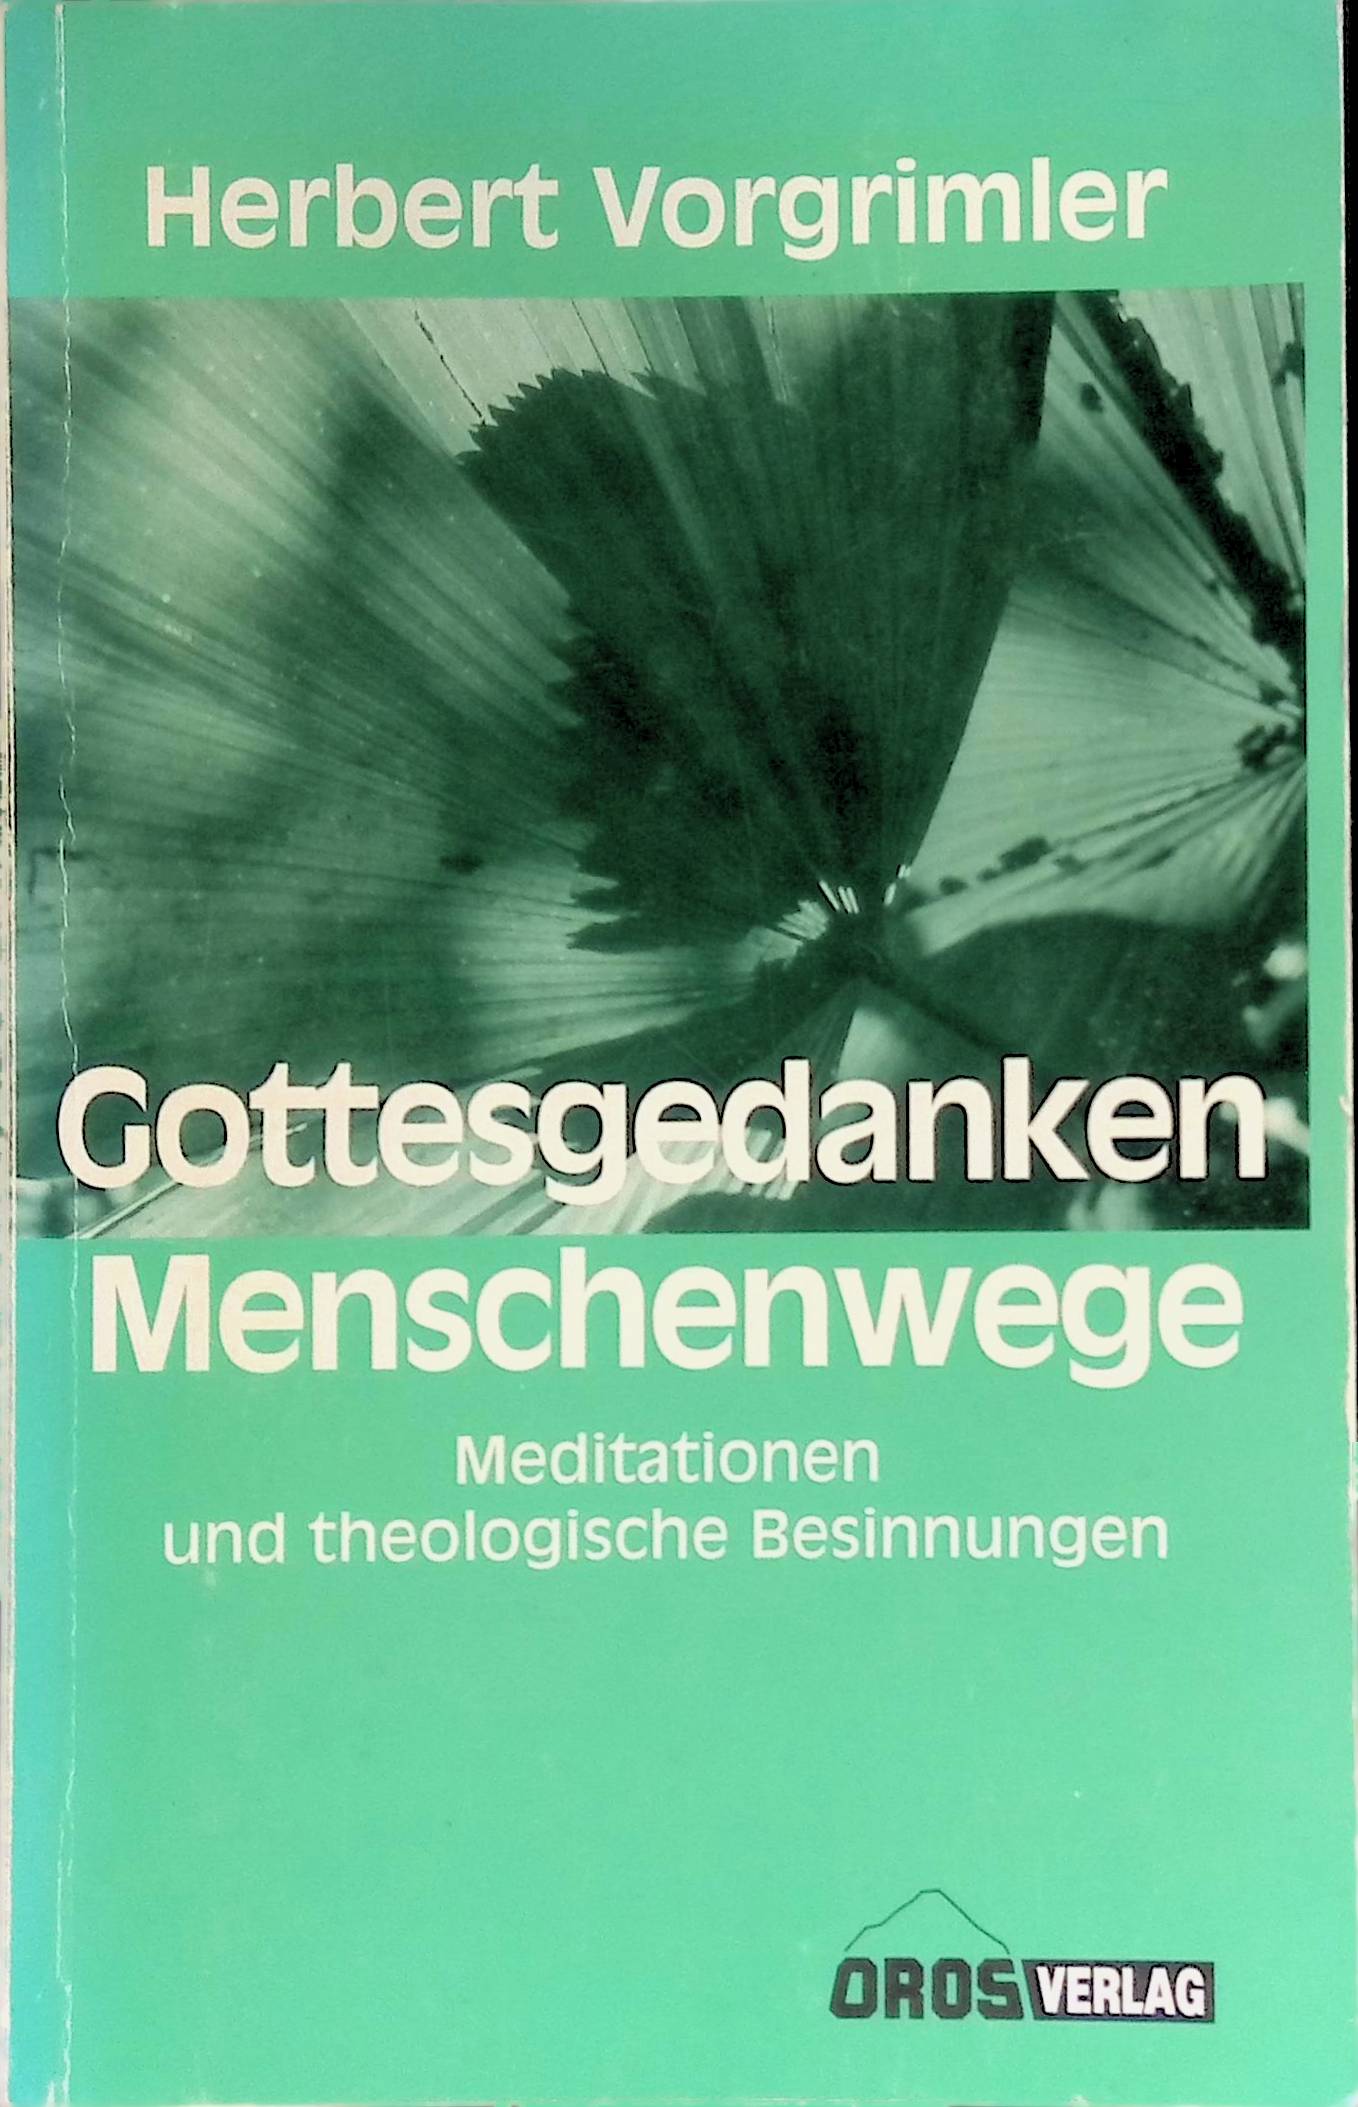 Gottesgedanken, Menschenwege : Meditationen und theologische Besinnungen. - Vorgrimler, Herbert